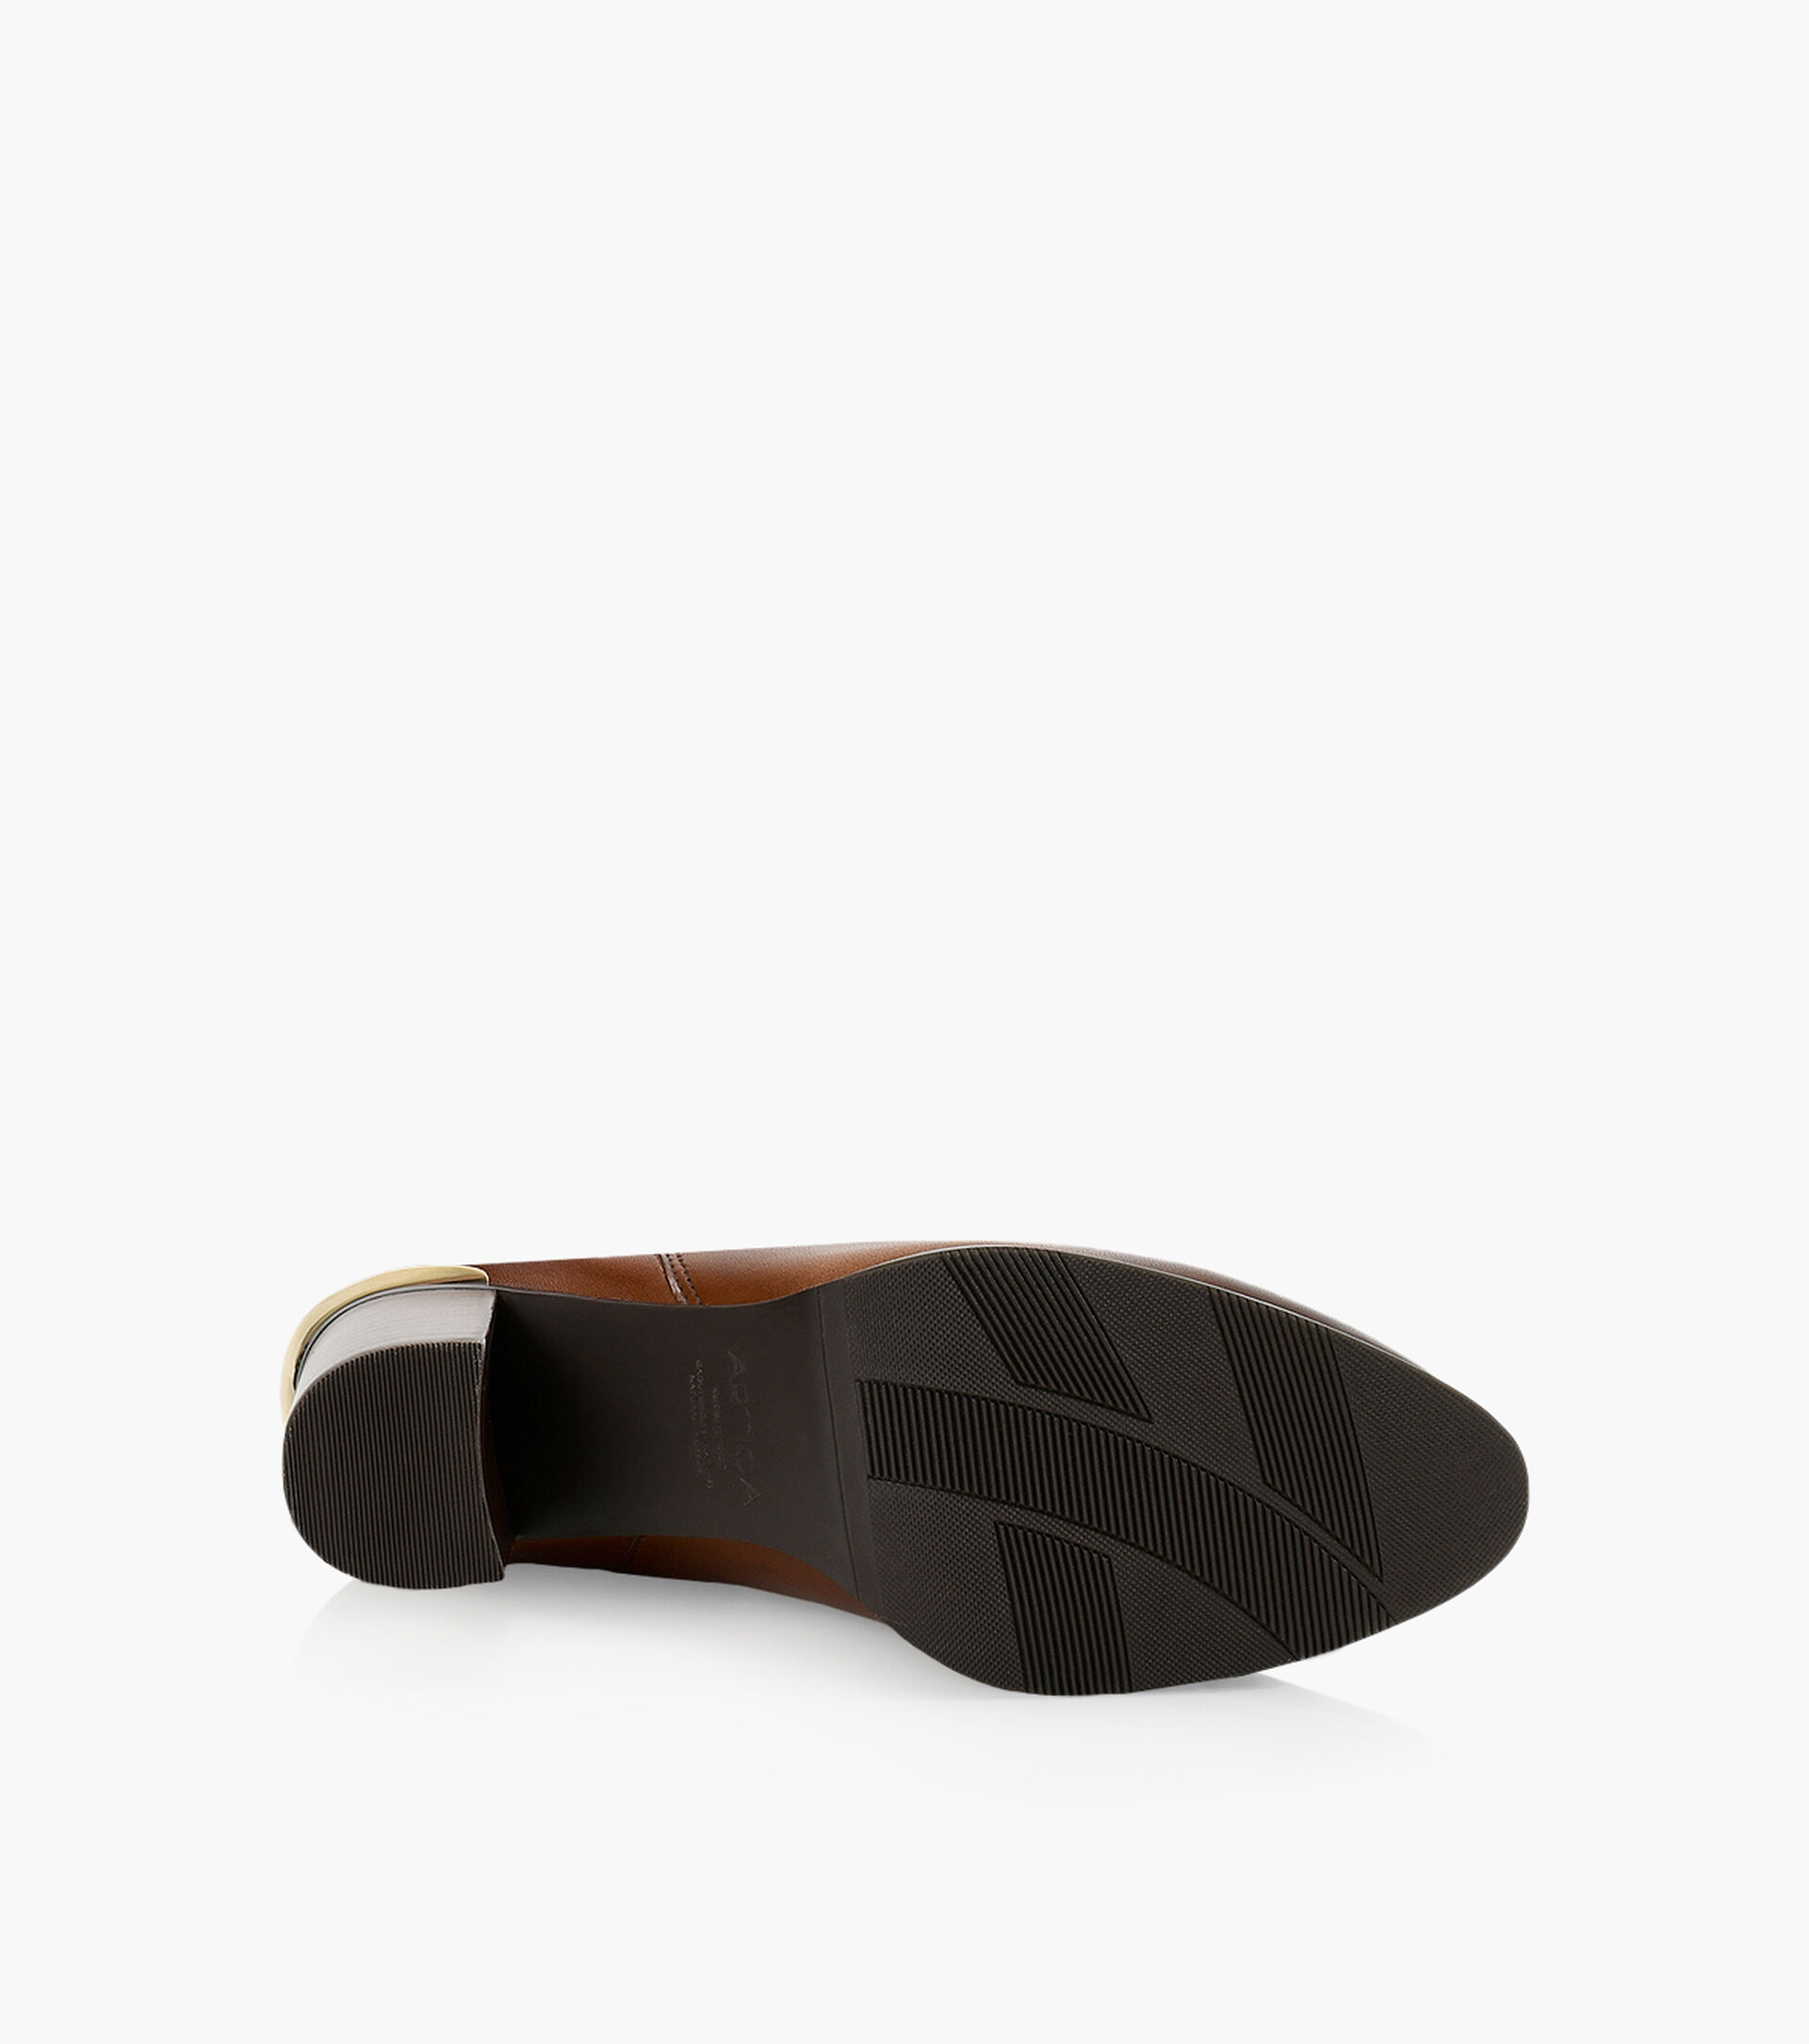 ARTICA JACKRABBIT - Leather | Browns Shoes